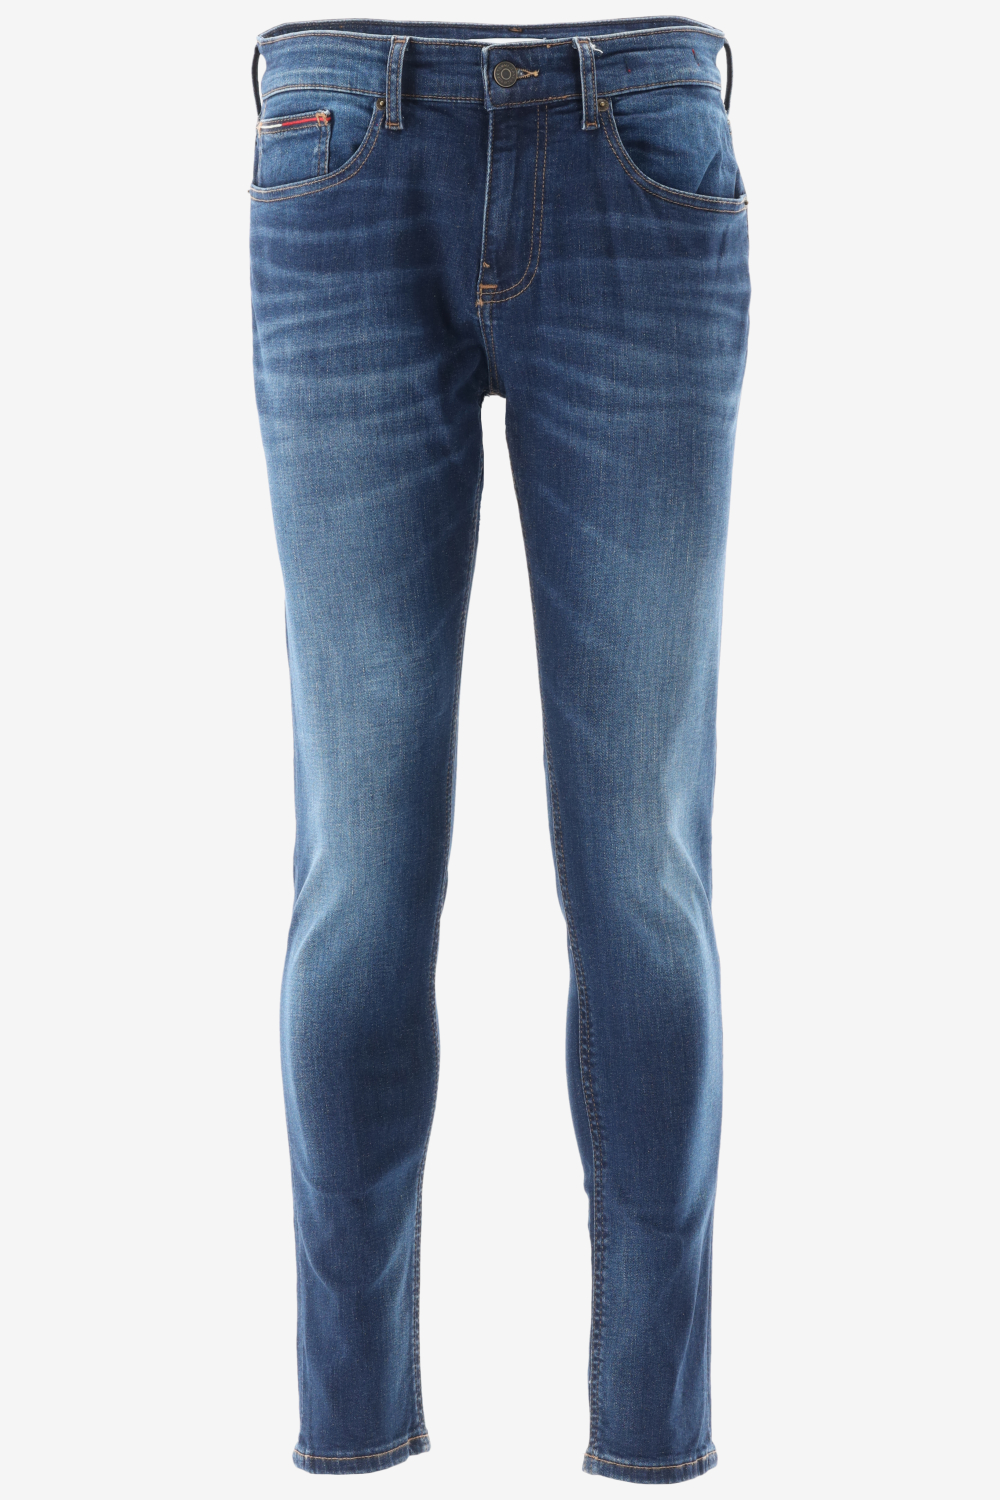 Tommy hilfiger slim fit austin slim tapered jeans maat 29-L34